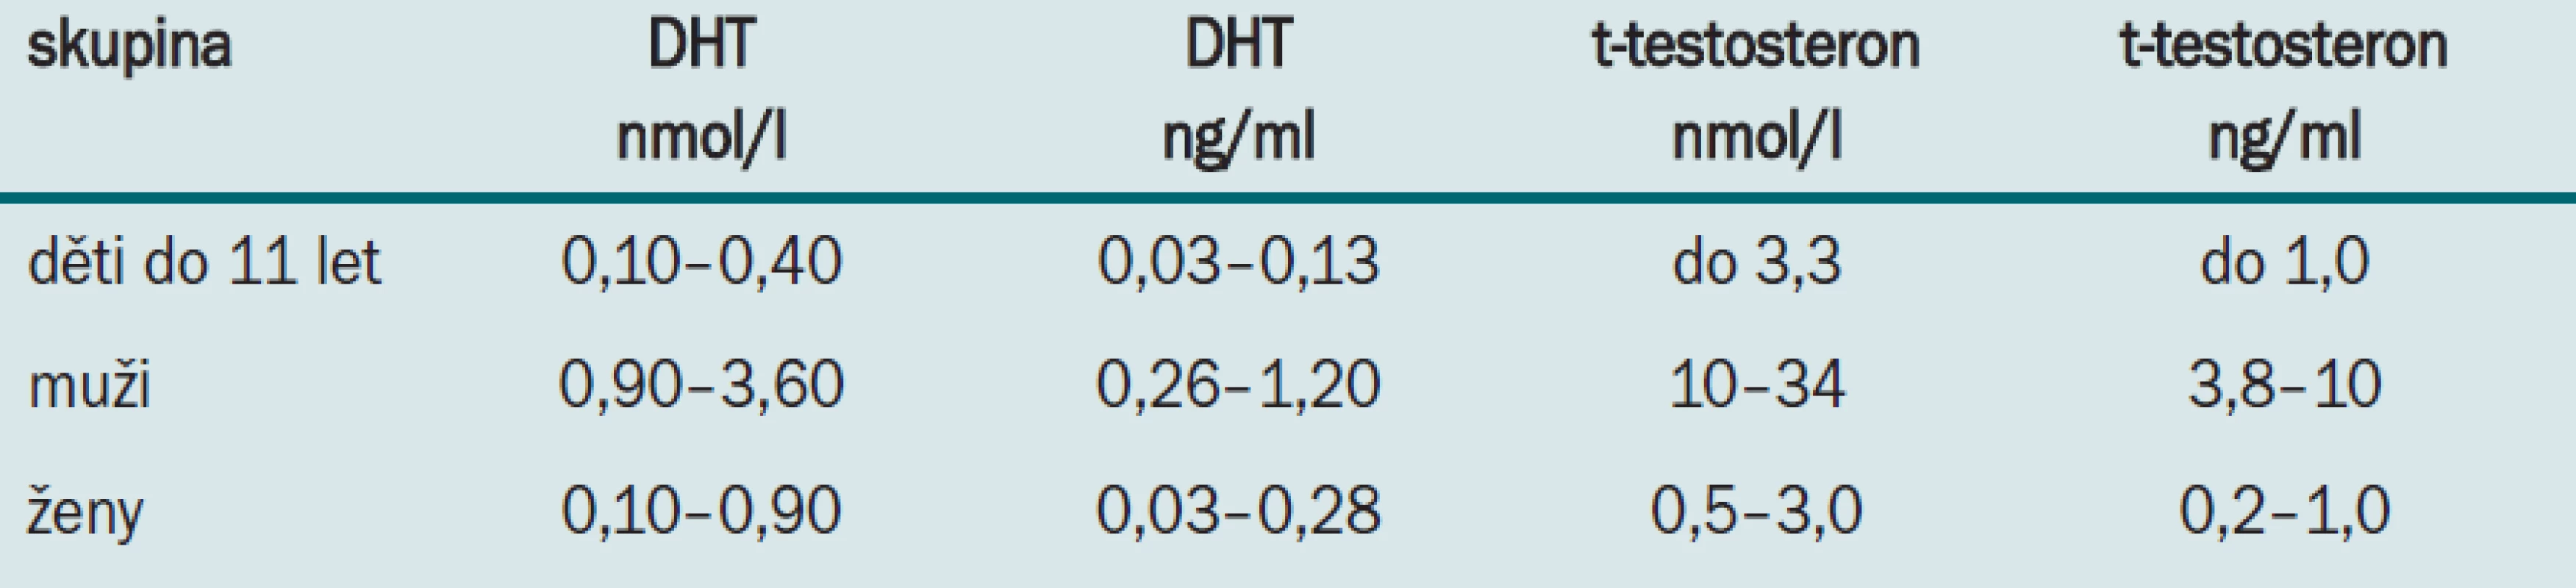 Referenční rozmezí koncentrací DHT a celkového testosteronu (t-testosteron) v séru (podle l. c. [9,10]).